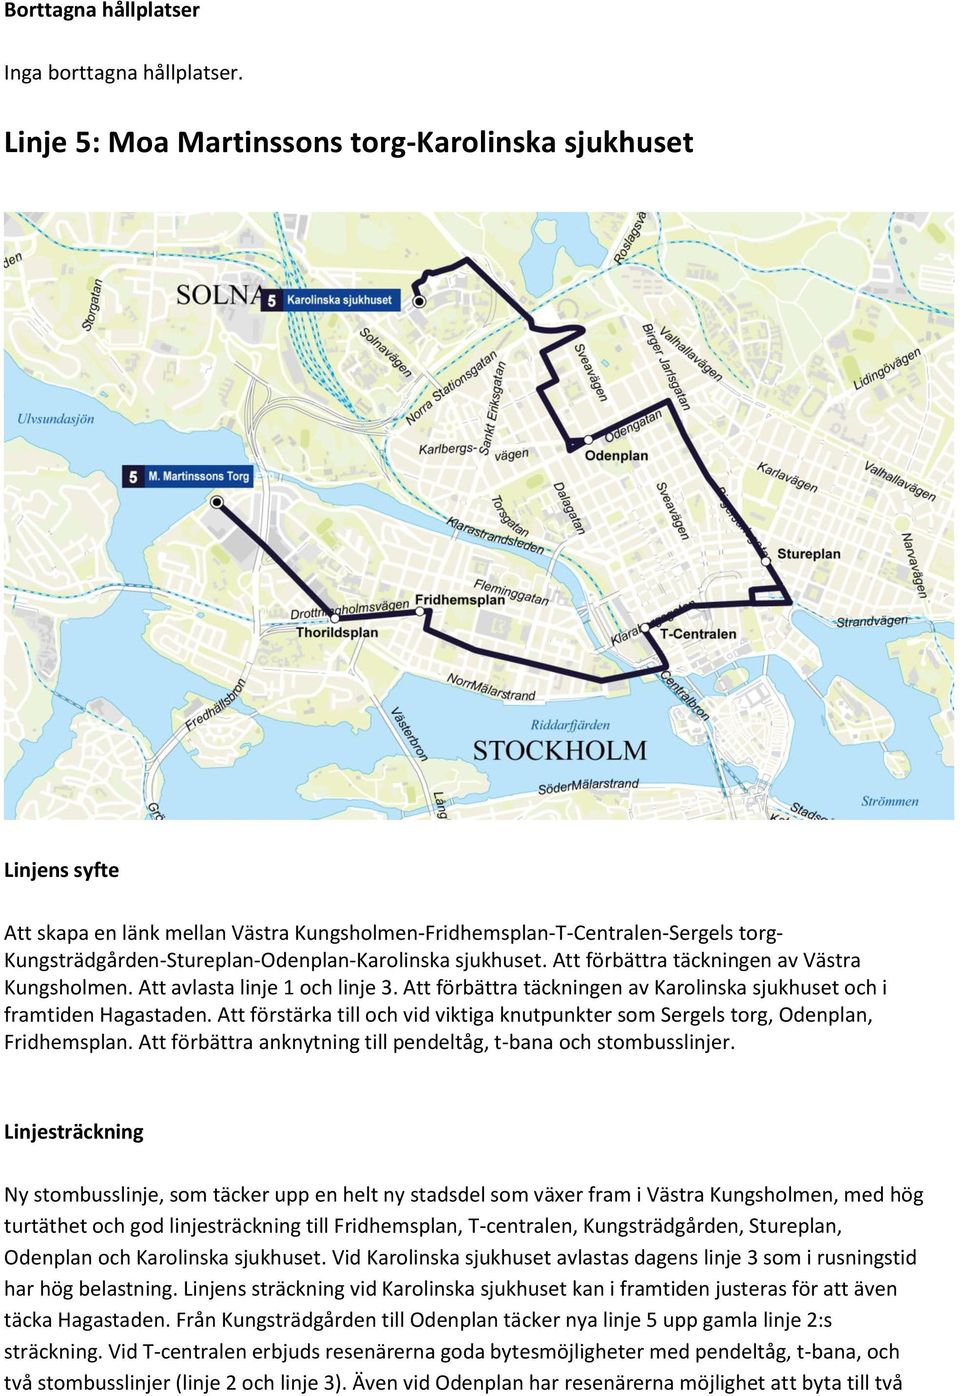 sjukhuset. Att förbättra täckningen av Västra Kungsholmen. Att avlasta linje 1 och linje 3. Att förbättra täckningen av Karolinska sjukhuset och i framtiden Hagastaden.